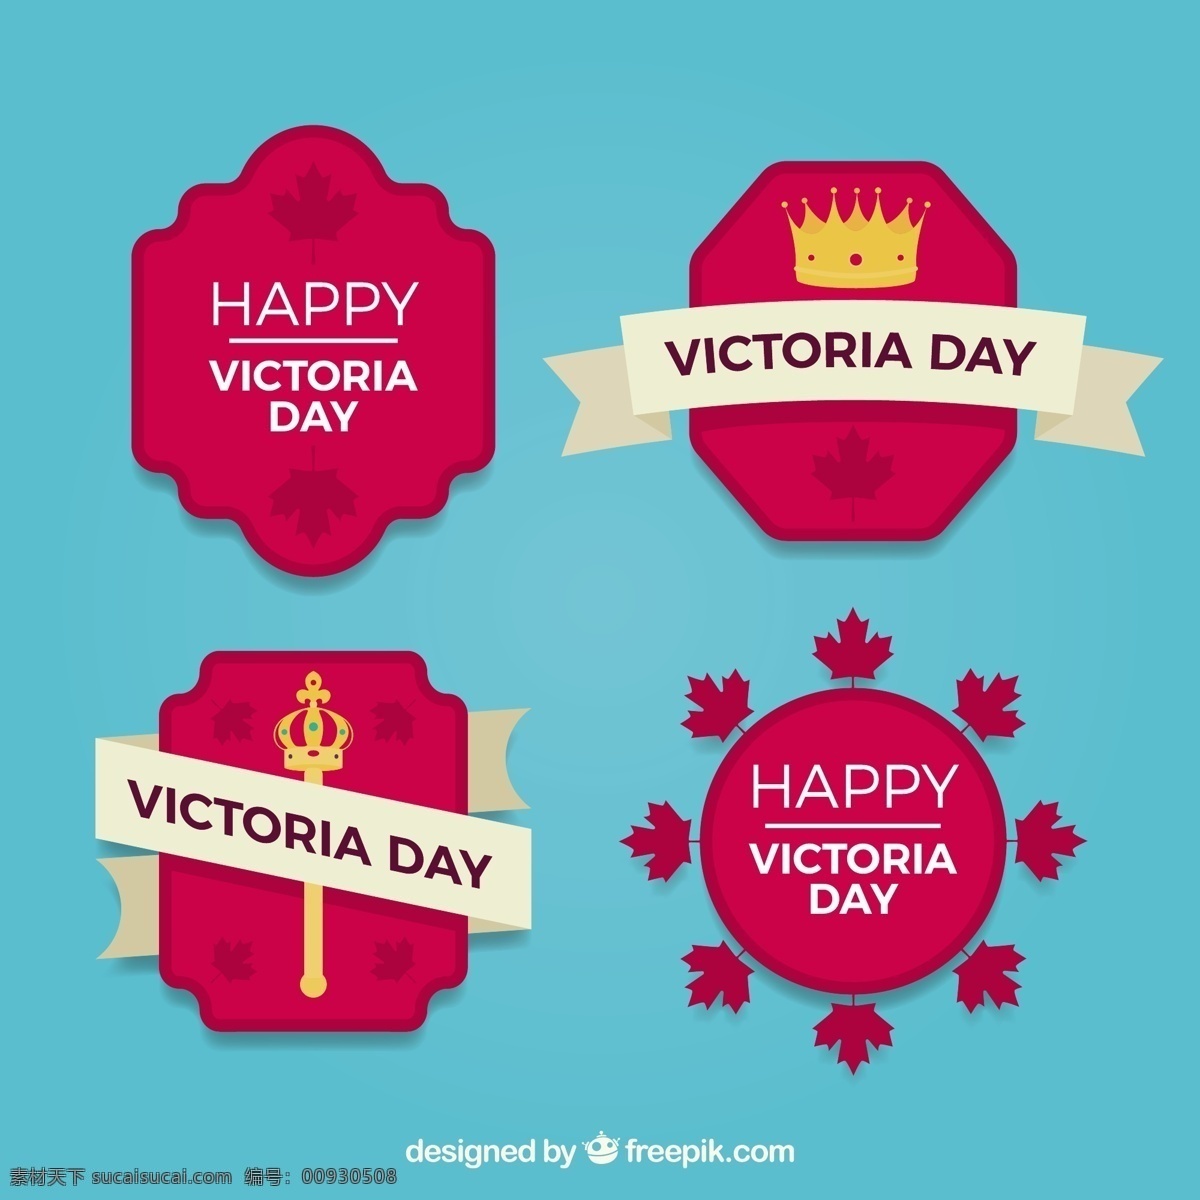 维多利亚 日标 签 收集 王冠 权杖 丝带 生日 节日 假日皇冠 烟花 女王 加拿大 标签 天 包 设置 星期一 游行